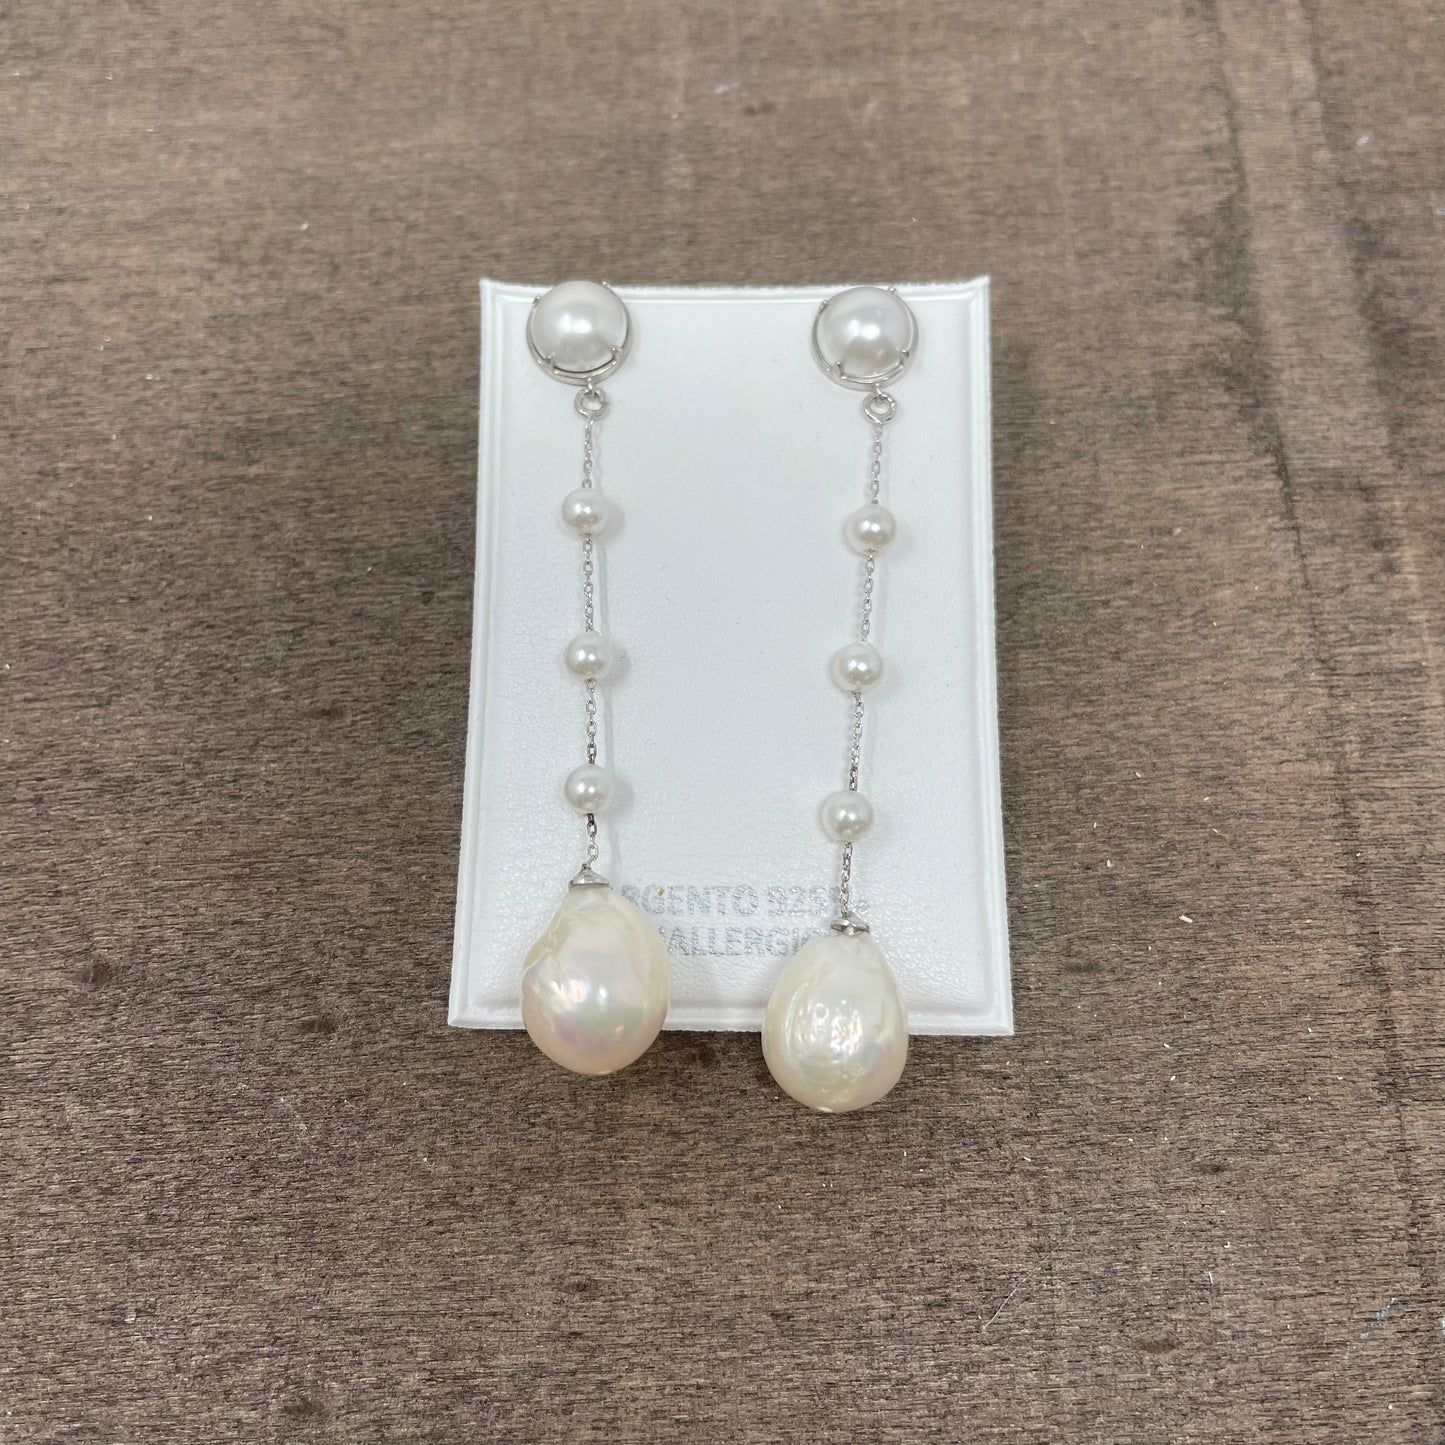 Coppia orecchini a lobo perla con allungo di catena e perle in argento bianco - chiusura a farfallina